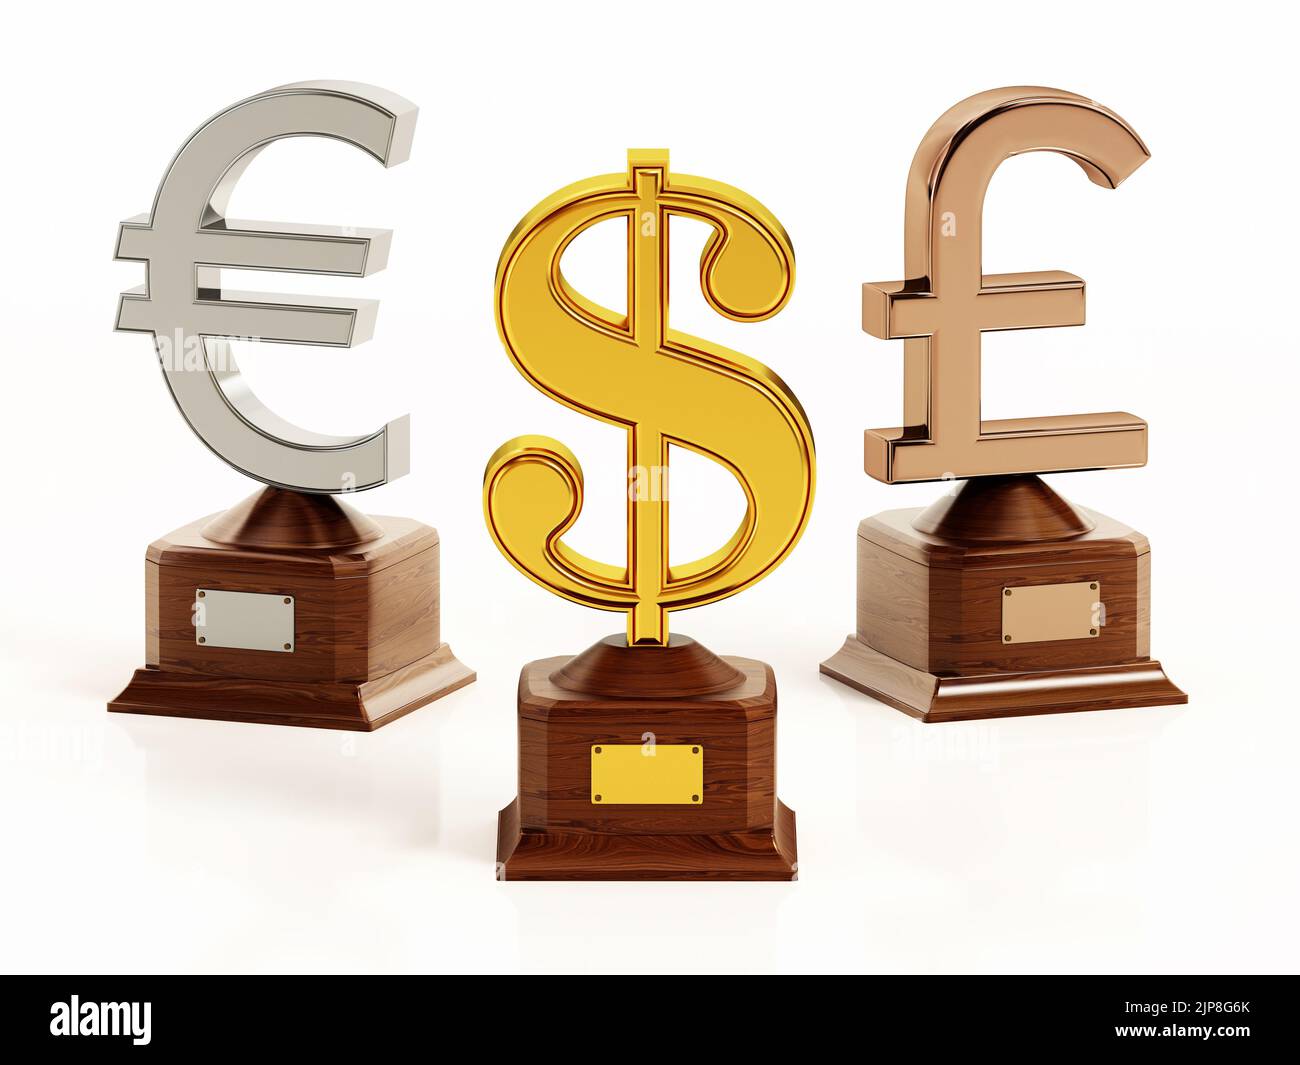 Símbolos de oro, plata y bronce del dólar, del euro y de la libra sobre bases de madera. Ilustración 3D. Foto de stock